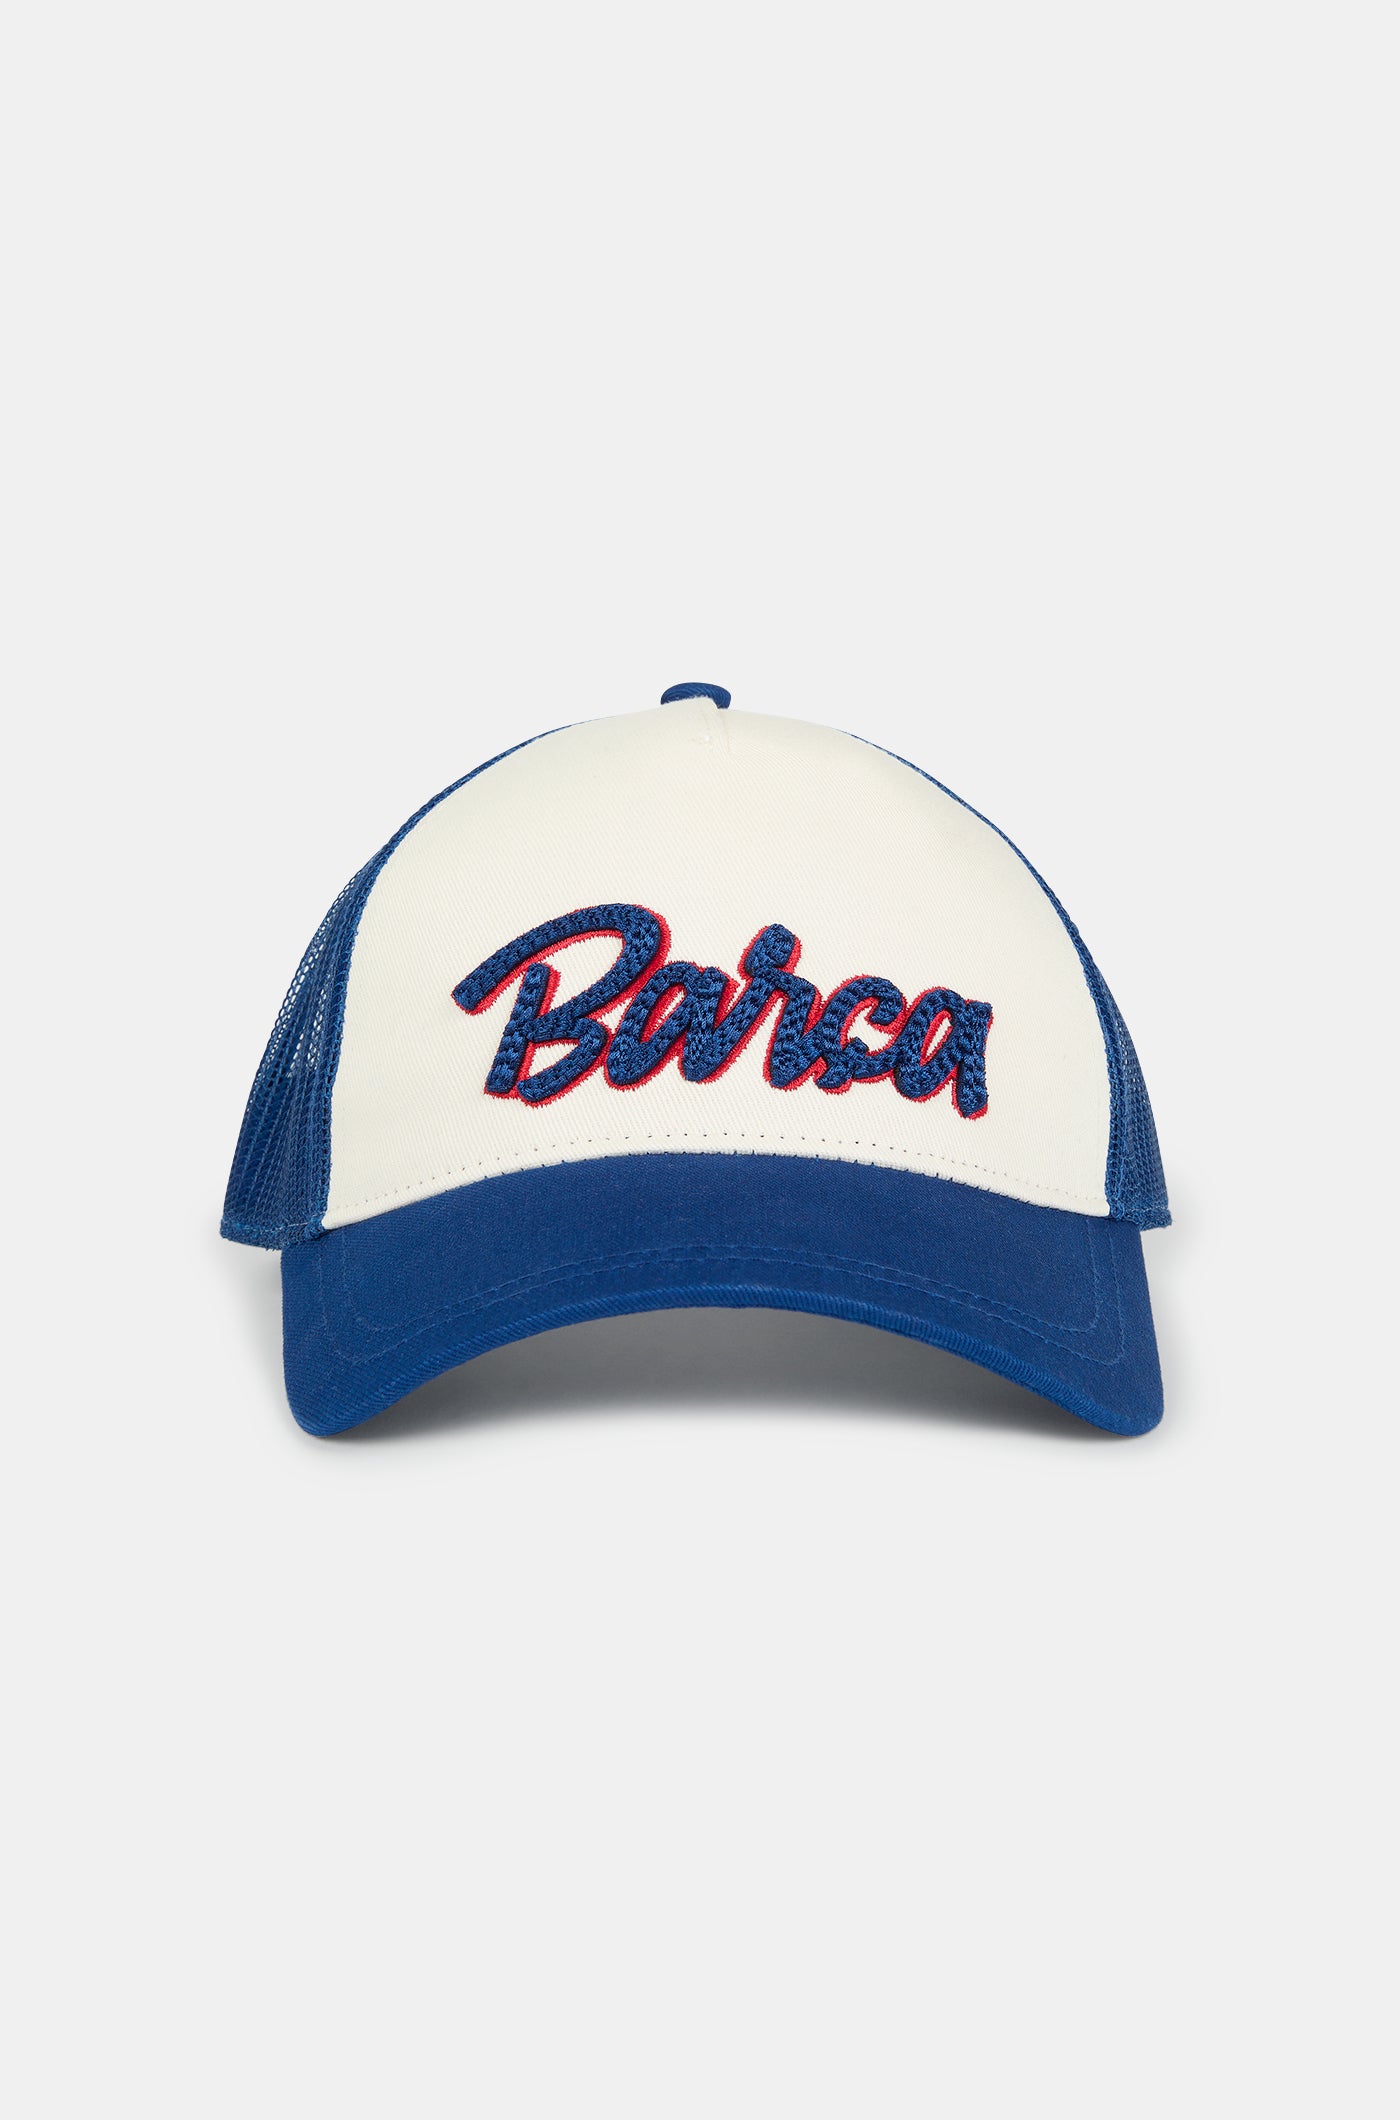 Gorra amb lletres "Barça"